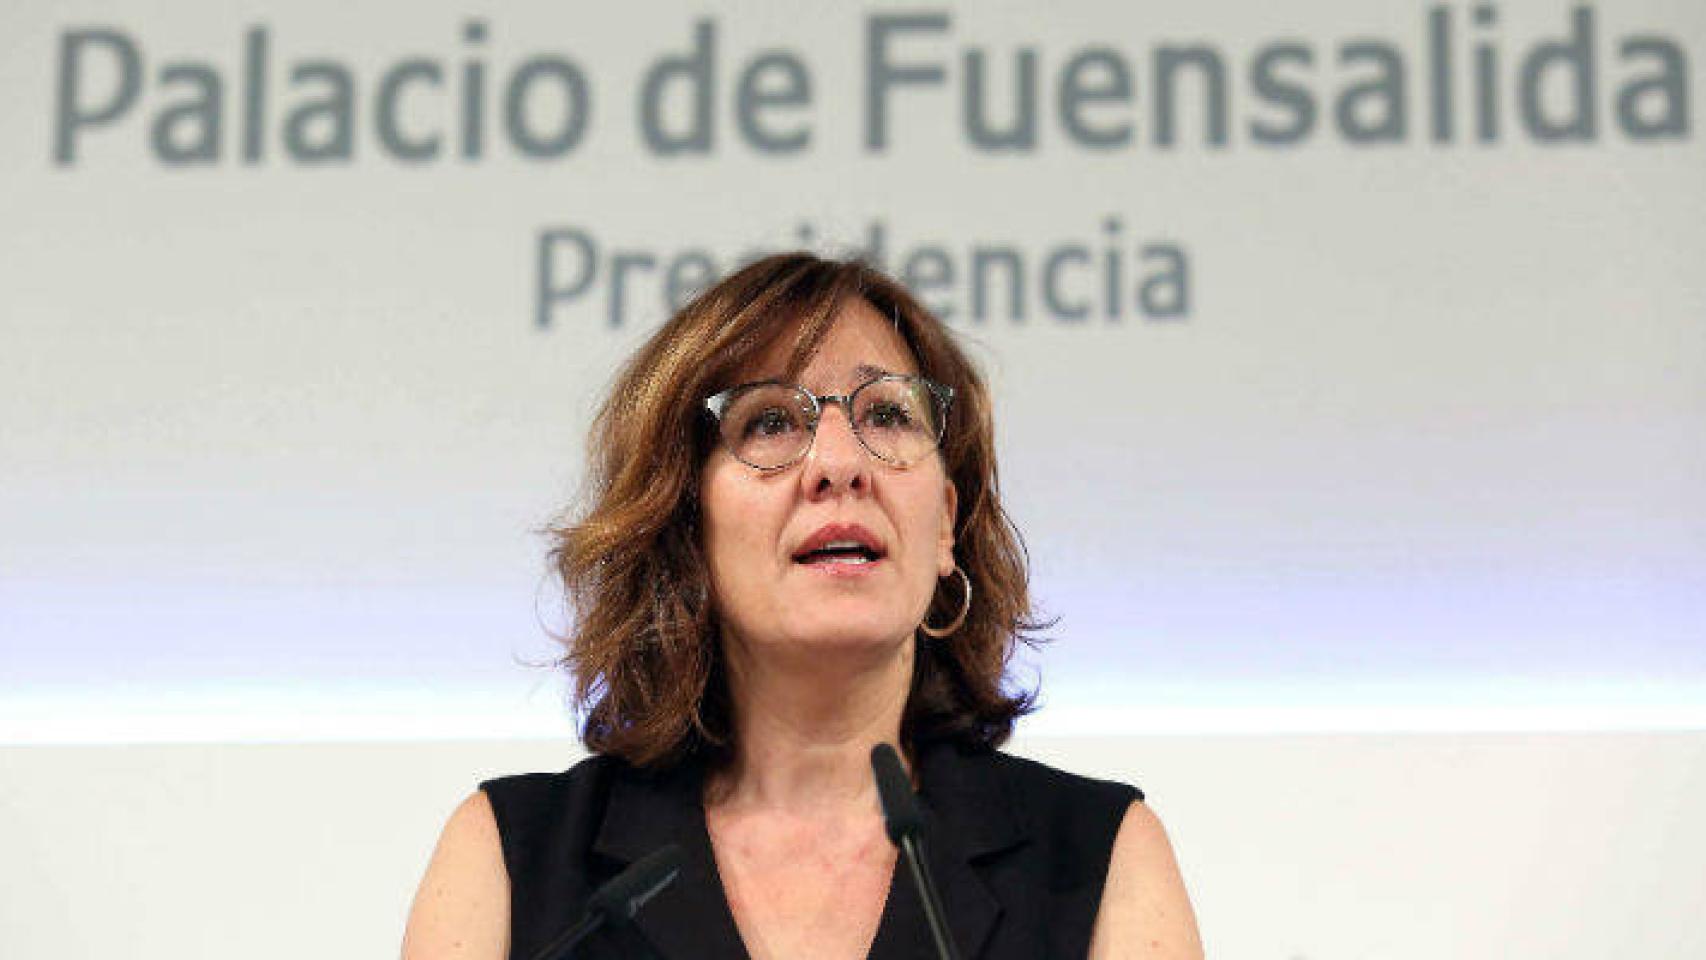 Blanca Fernández, consejera portavoz del Gobierno de Castilla-La Mancha. Foto: Óscar Huertas